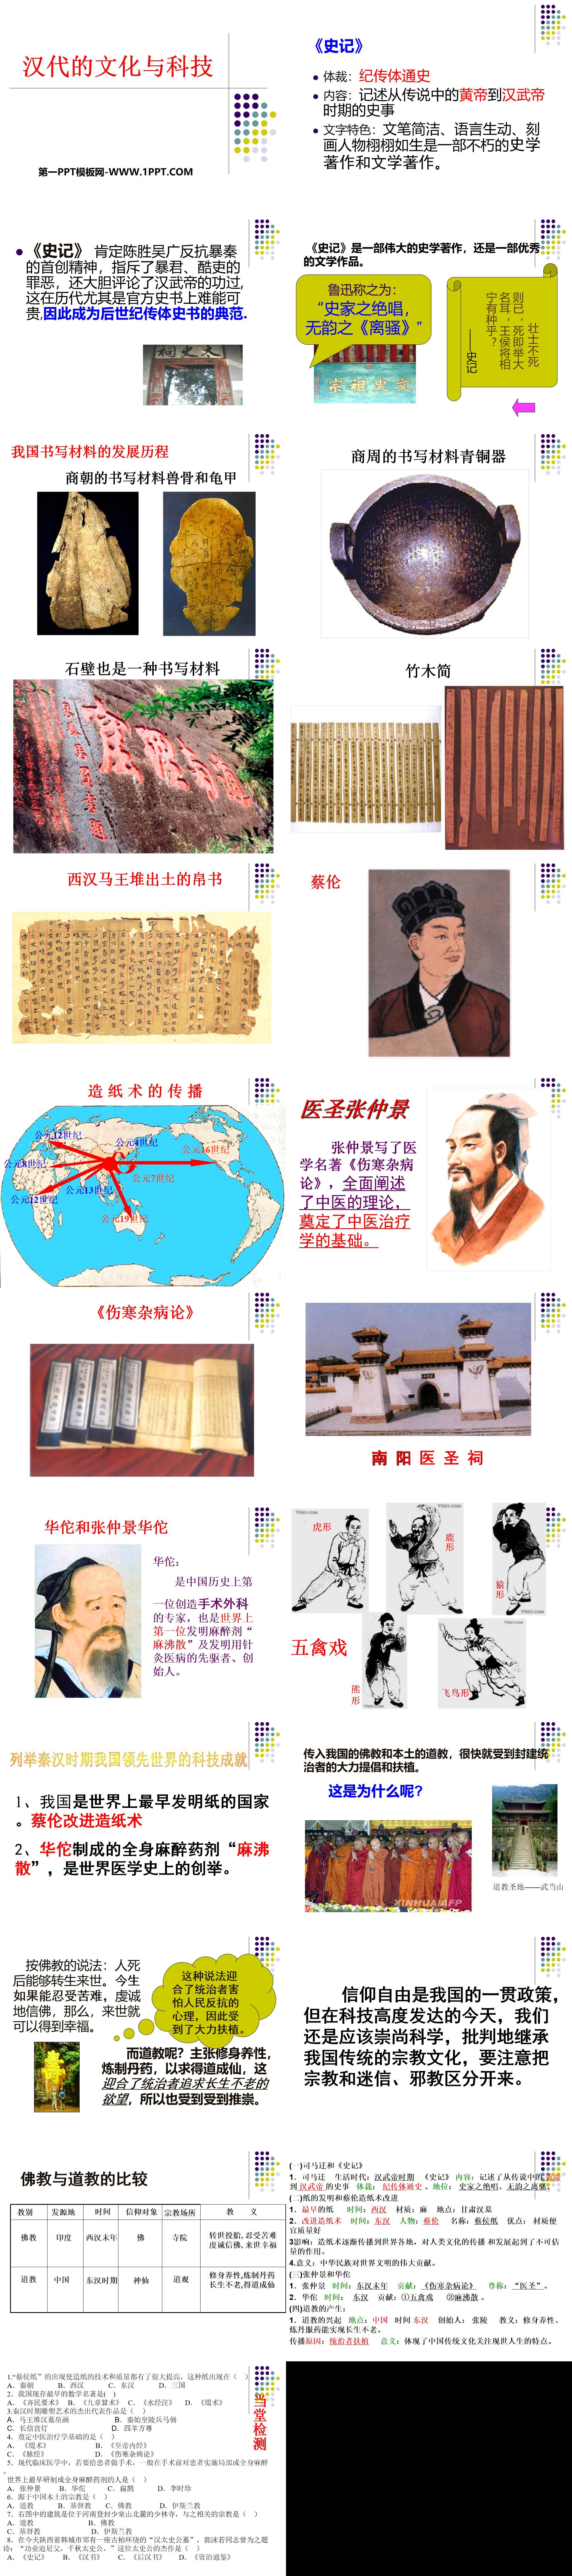 《汉代的文化与科技》秦汉时期PPT课件2
（2）